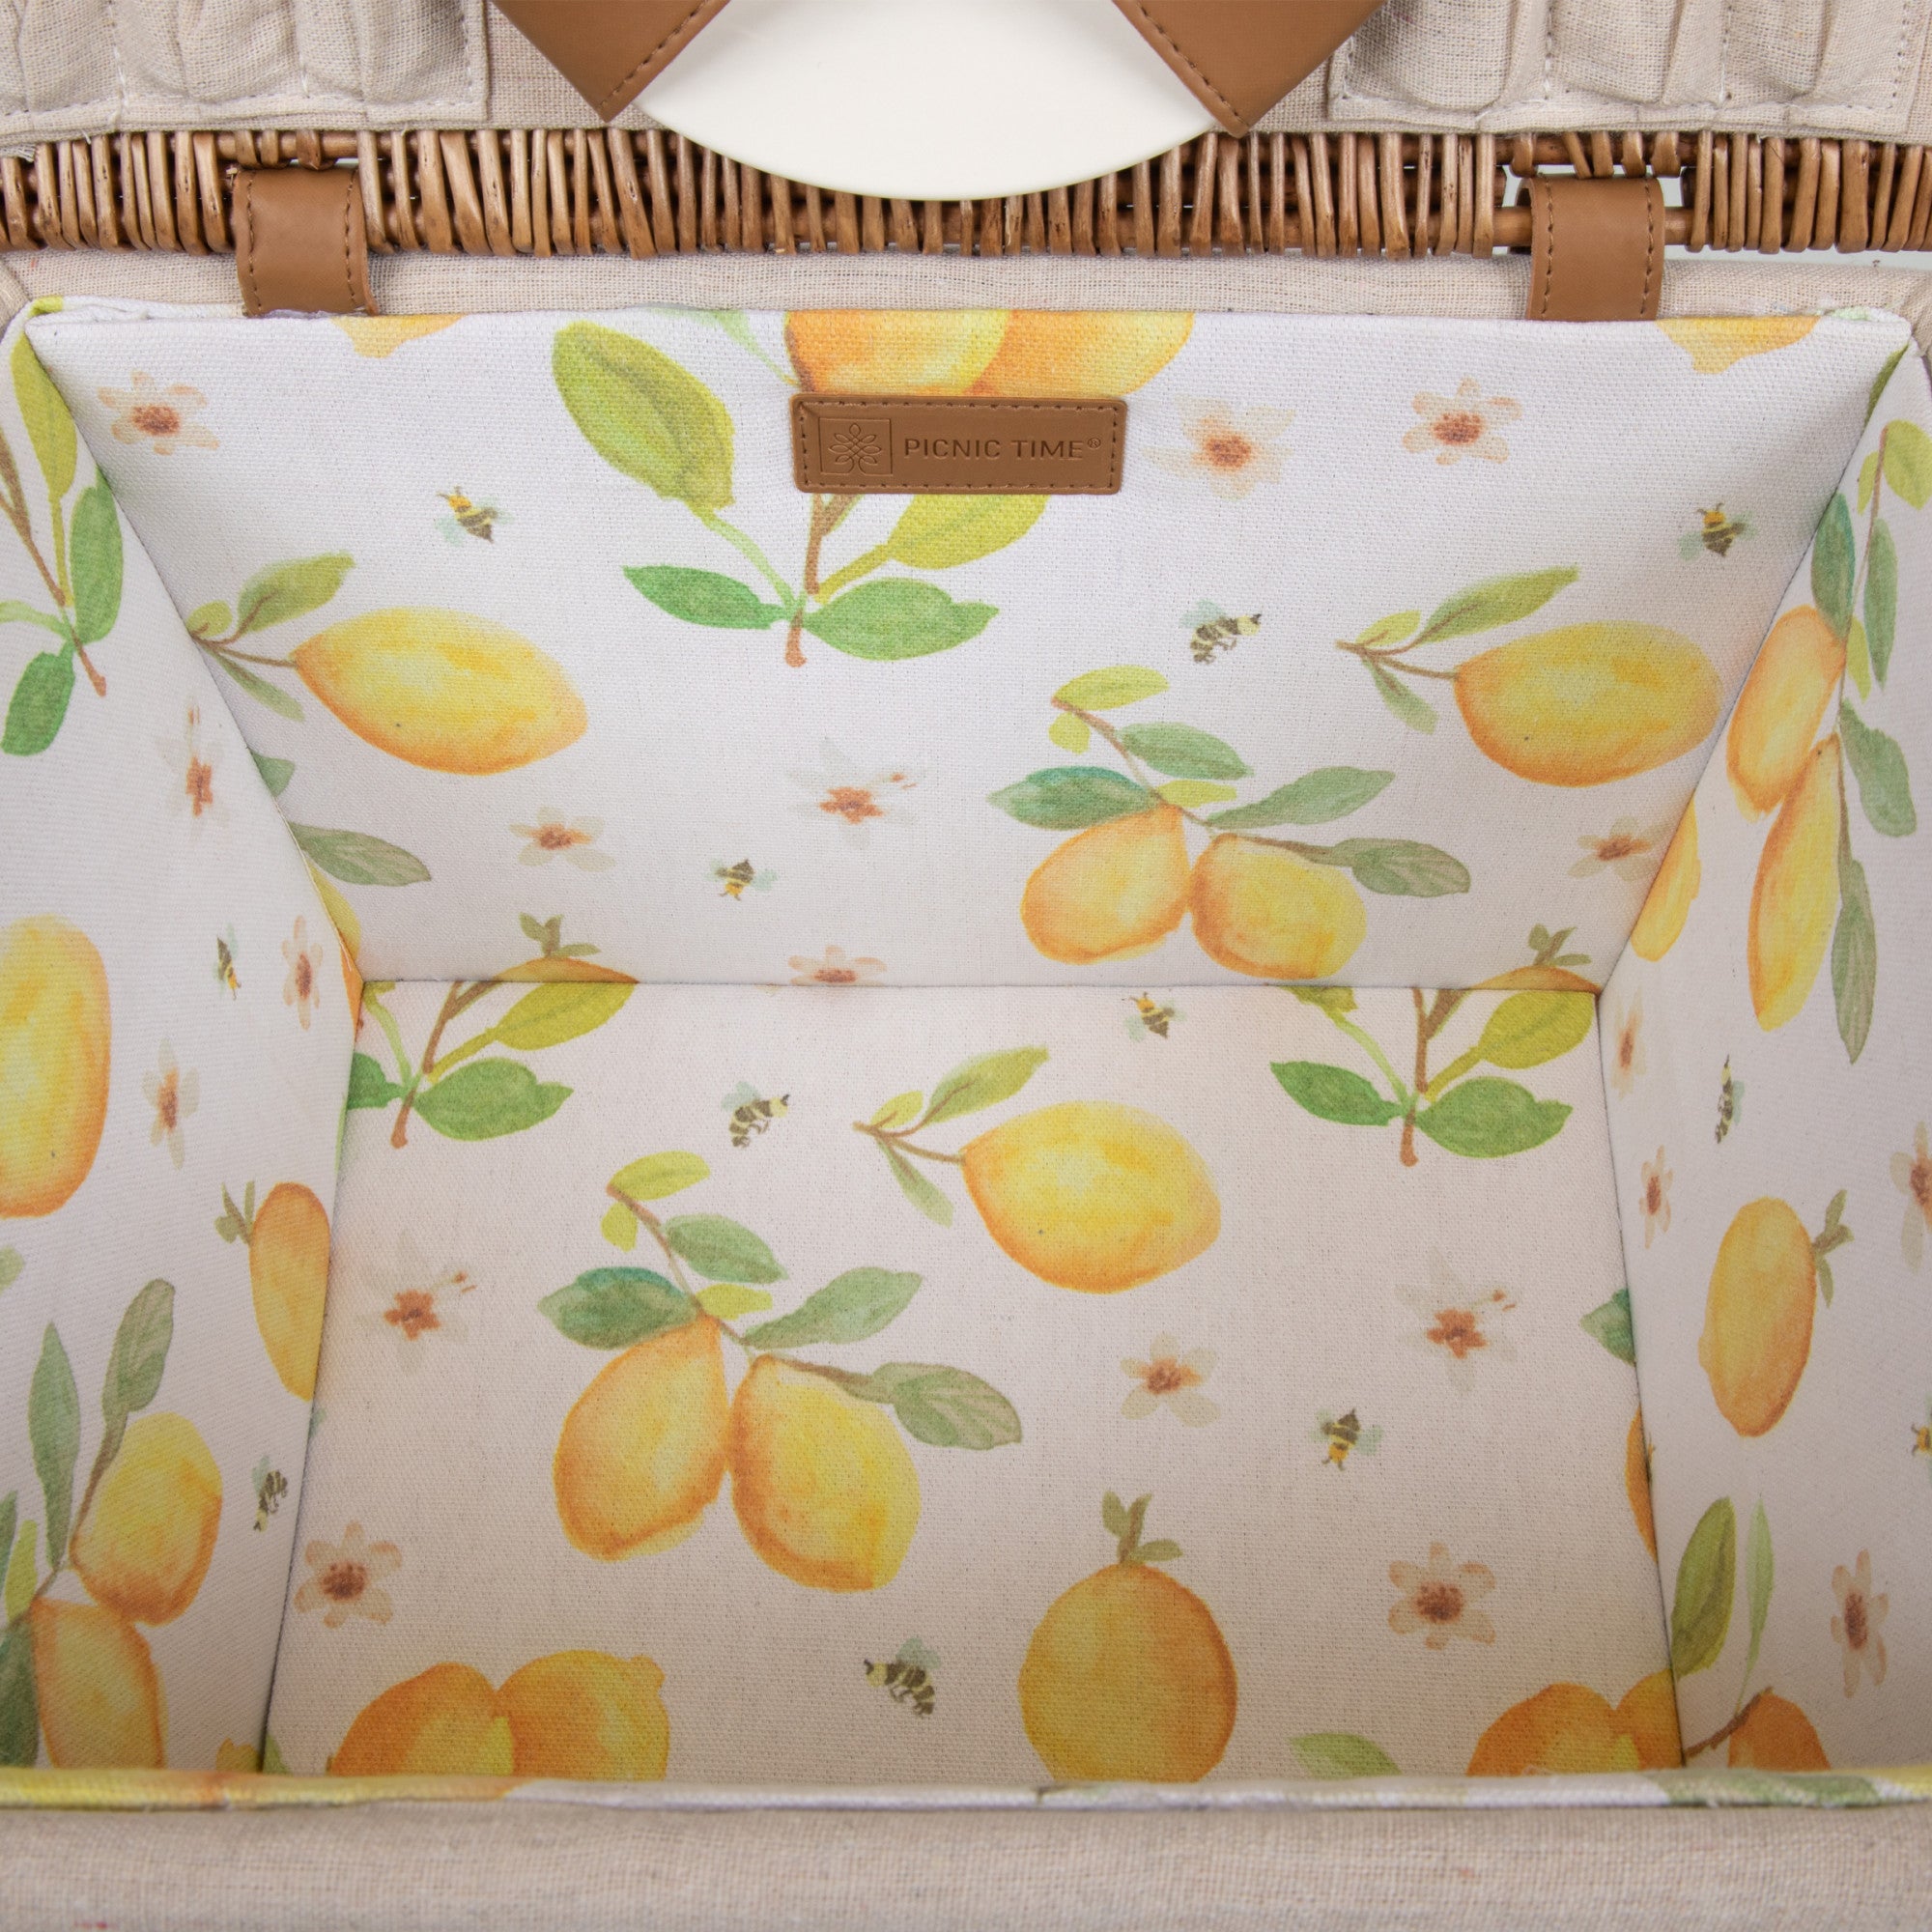 Lemongrove Picnic Basket for 2 - Bees & Lemons